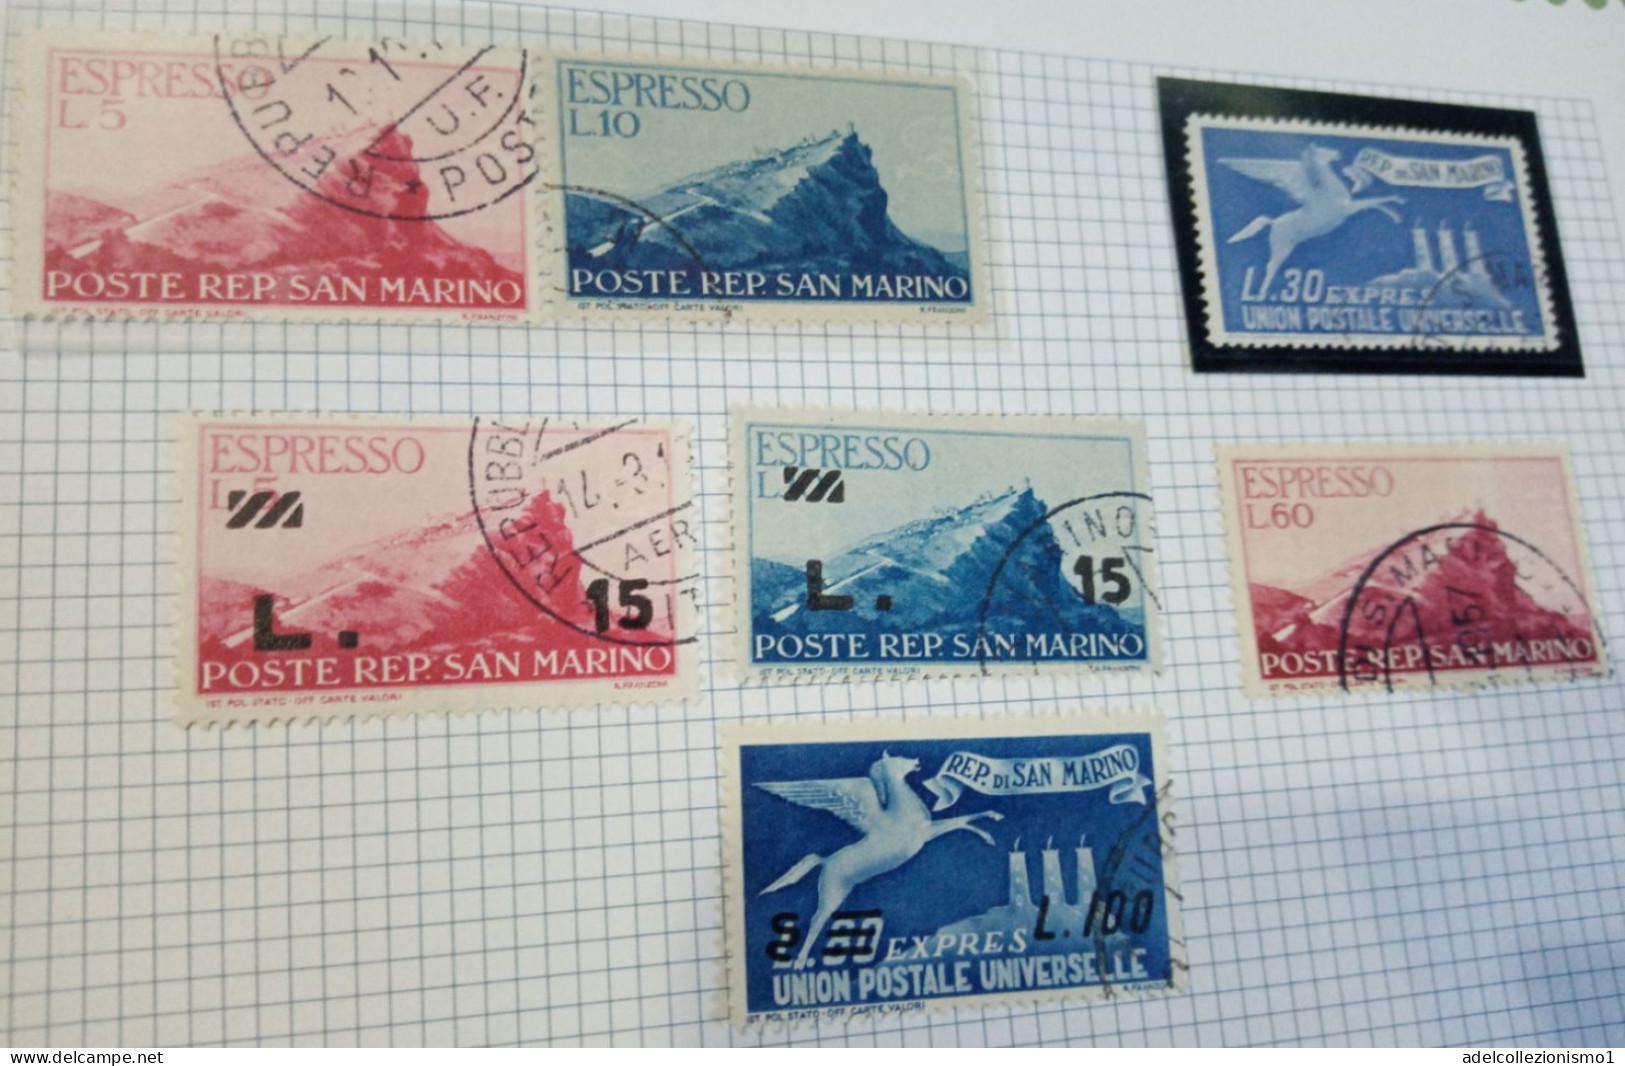 48367B) SAN MARINO ESPRESSI  LOTTO DI FRANCOBOLLI USATI DAL 1945 AL 1957 - Express Letter Stamps